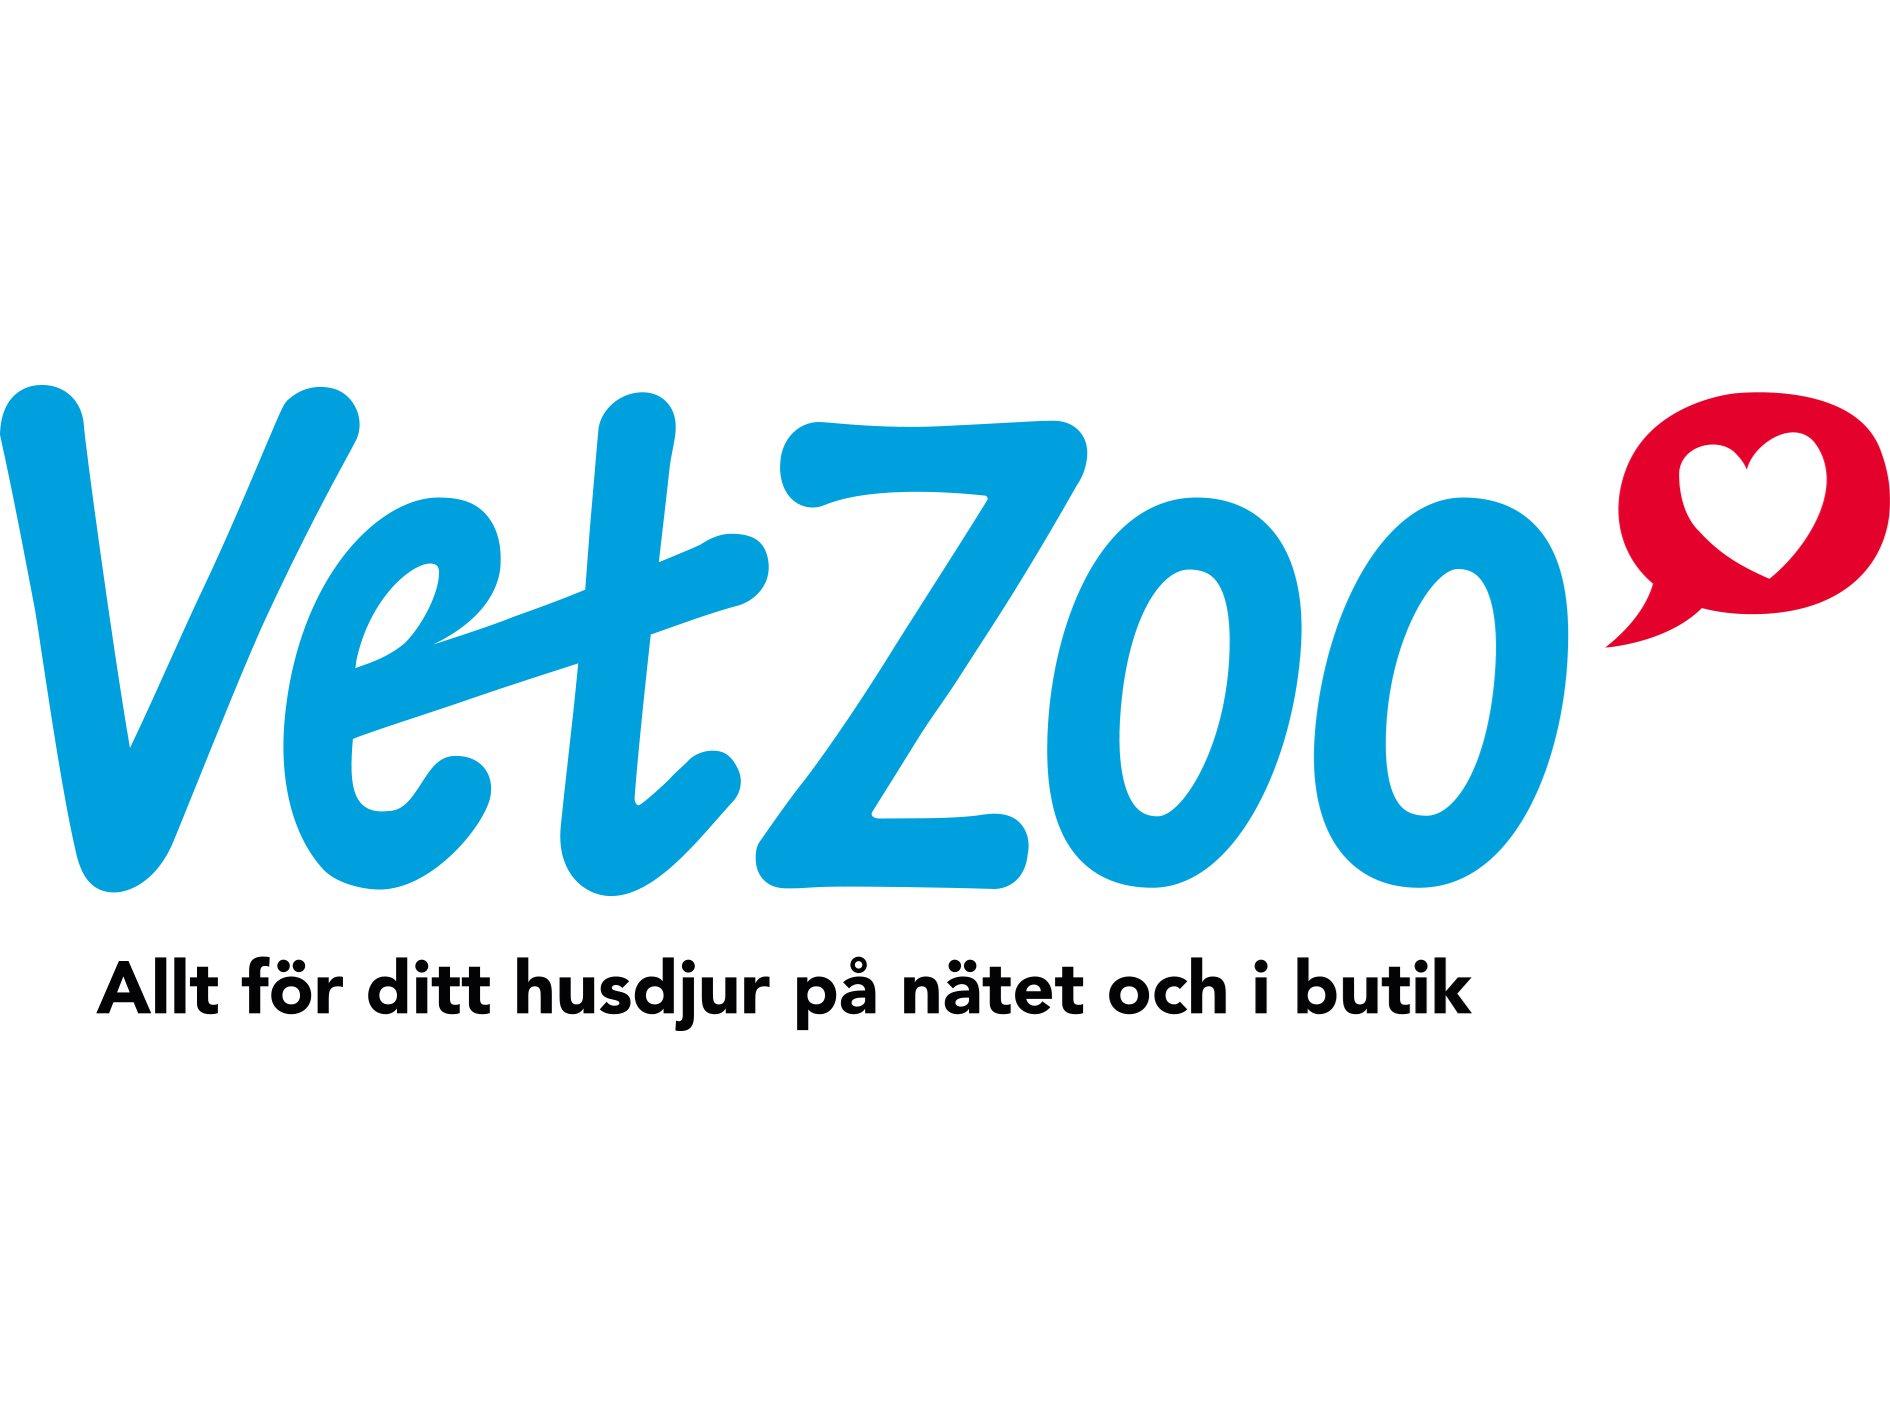 VetZoo